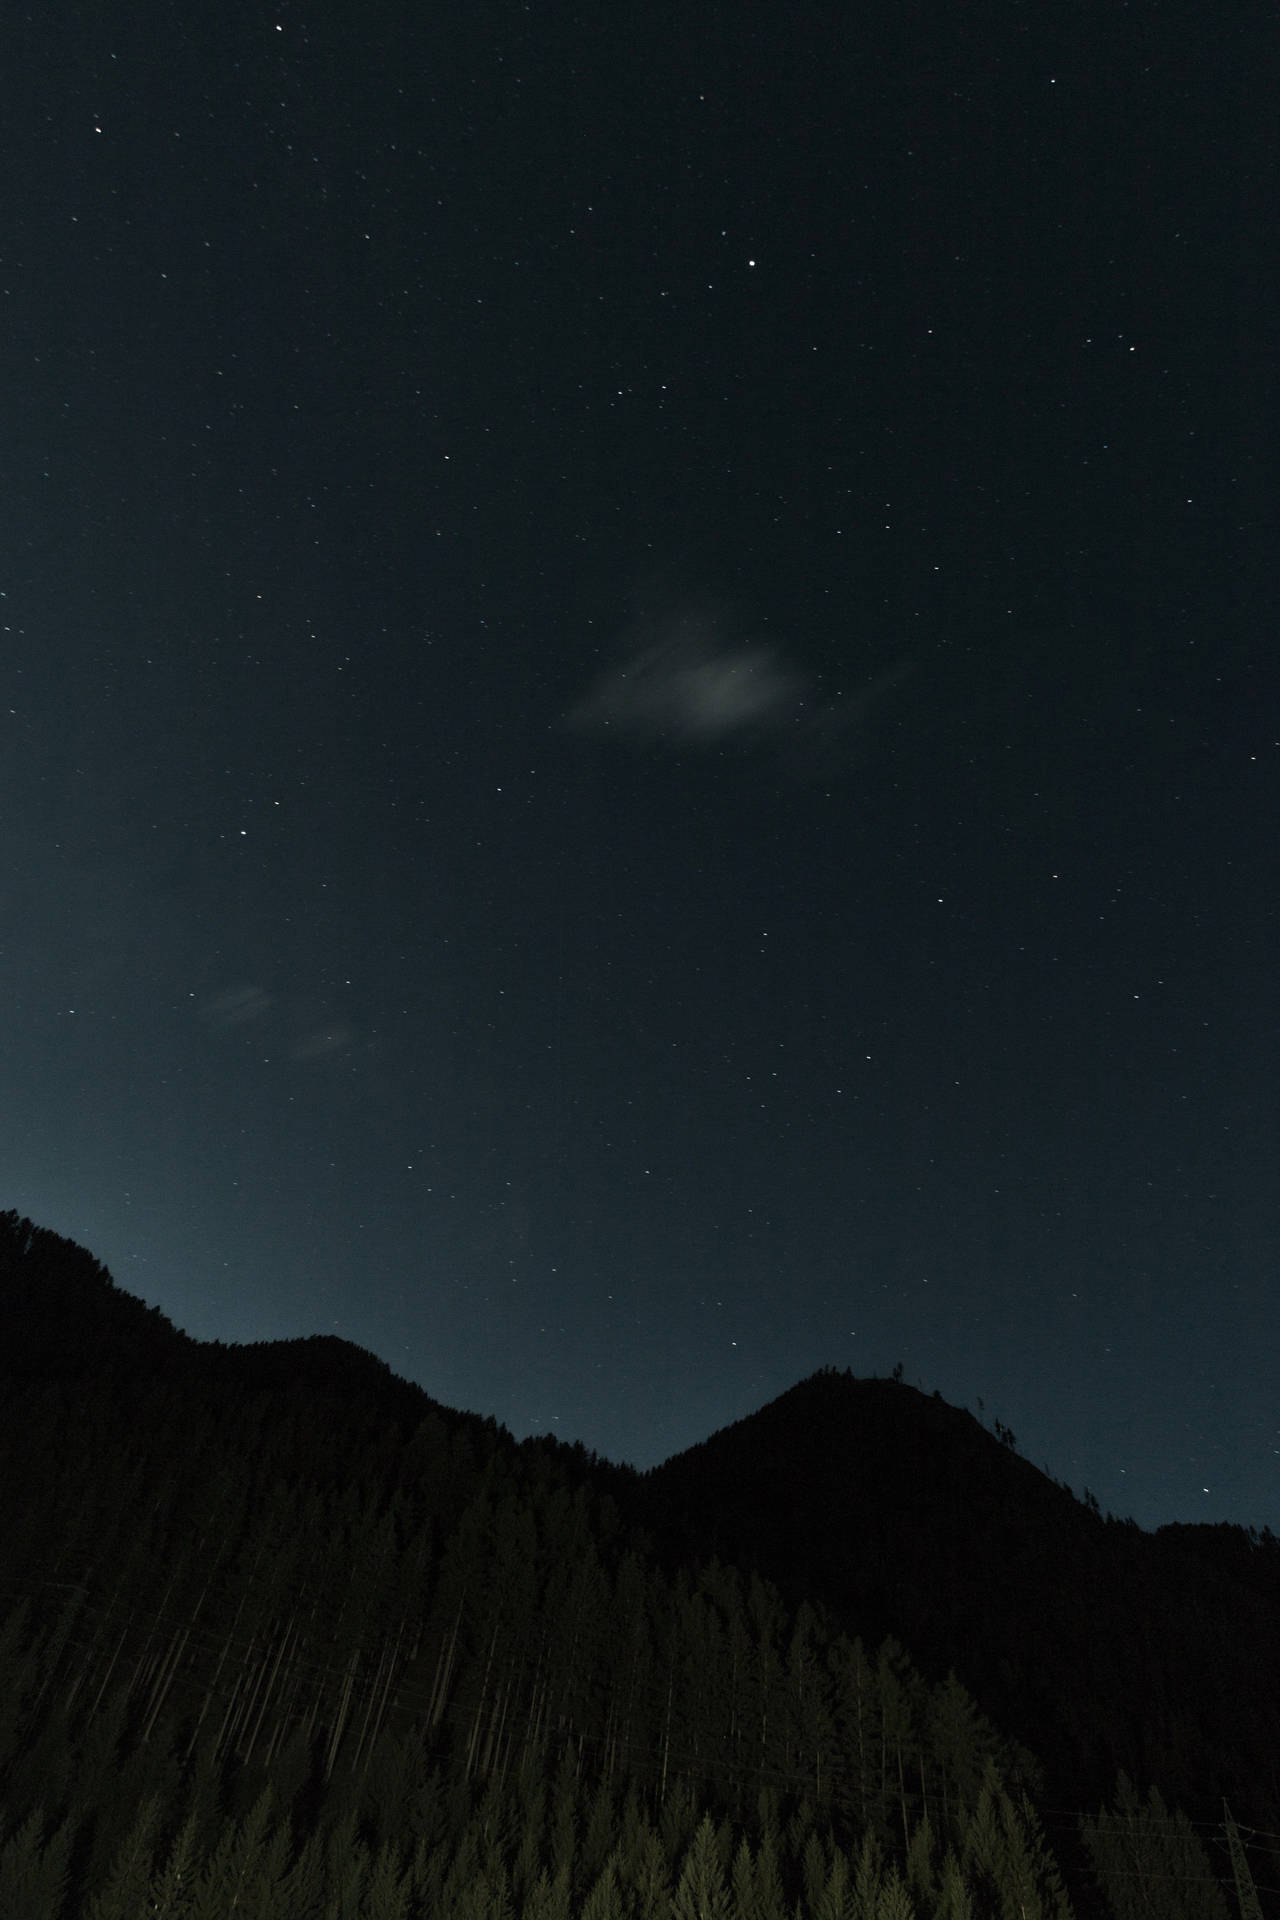 Uncielo Tenue Iluminado Por Estrellas Sobre Una Impresionante Silueta De Montaña. Fondo de pantalla